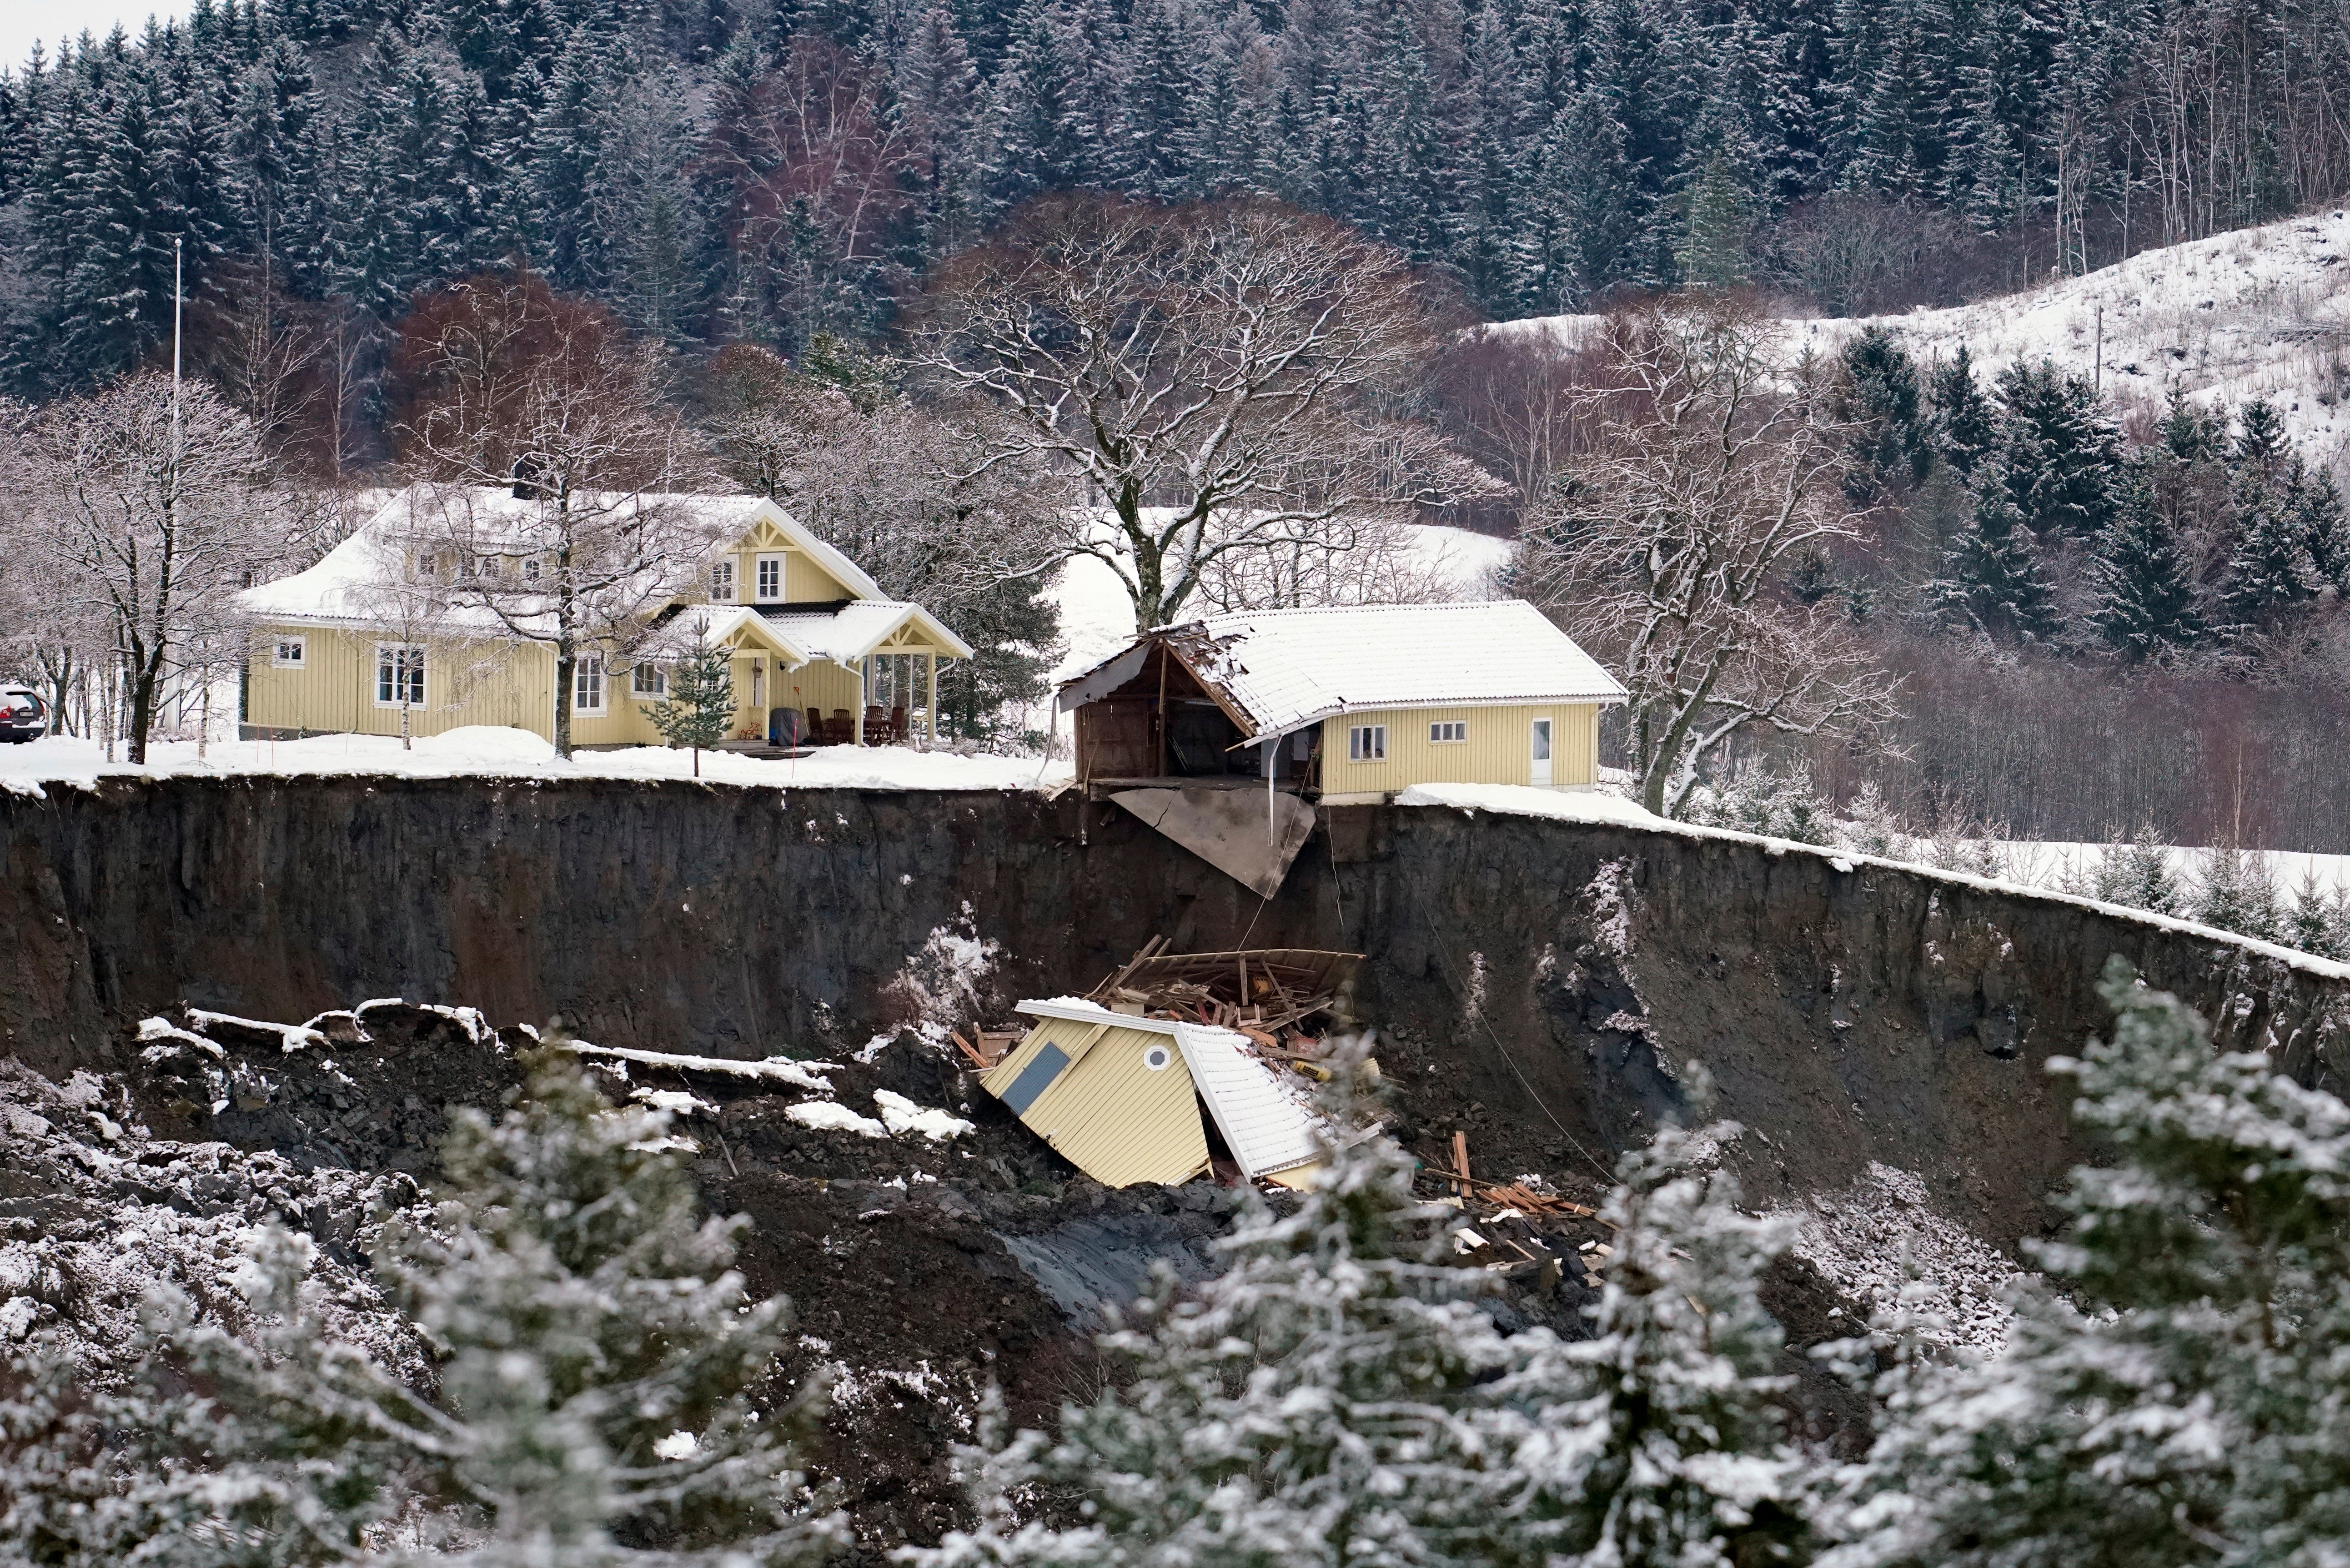 Varias viviendas destruidas luego de un deslizamiento de tierra en el municipio de Gjerdrum, cerca de Ask, Noruega, el jueves 31 de diciembre de 2020.&nbsp;